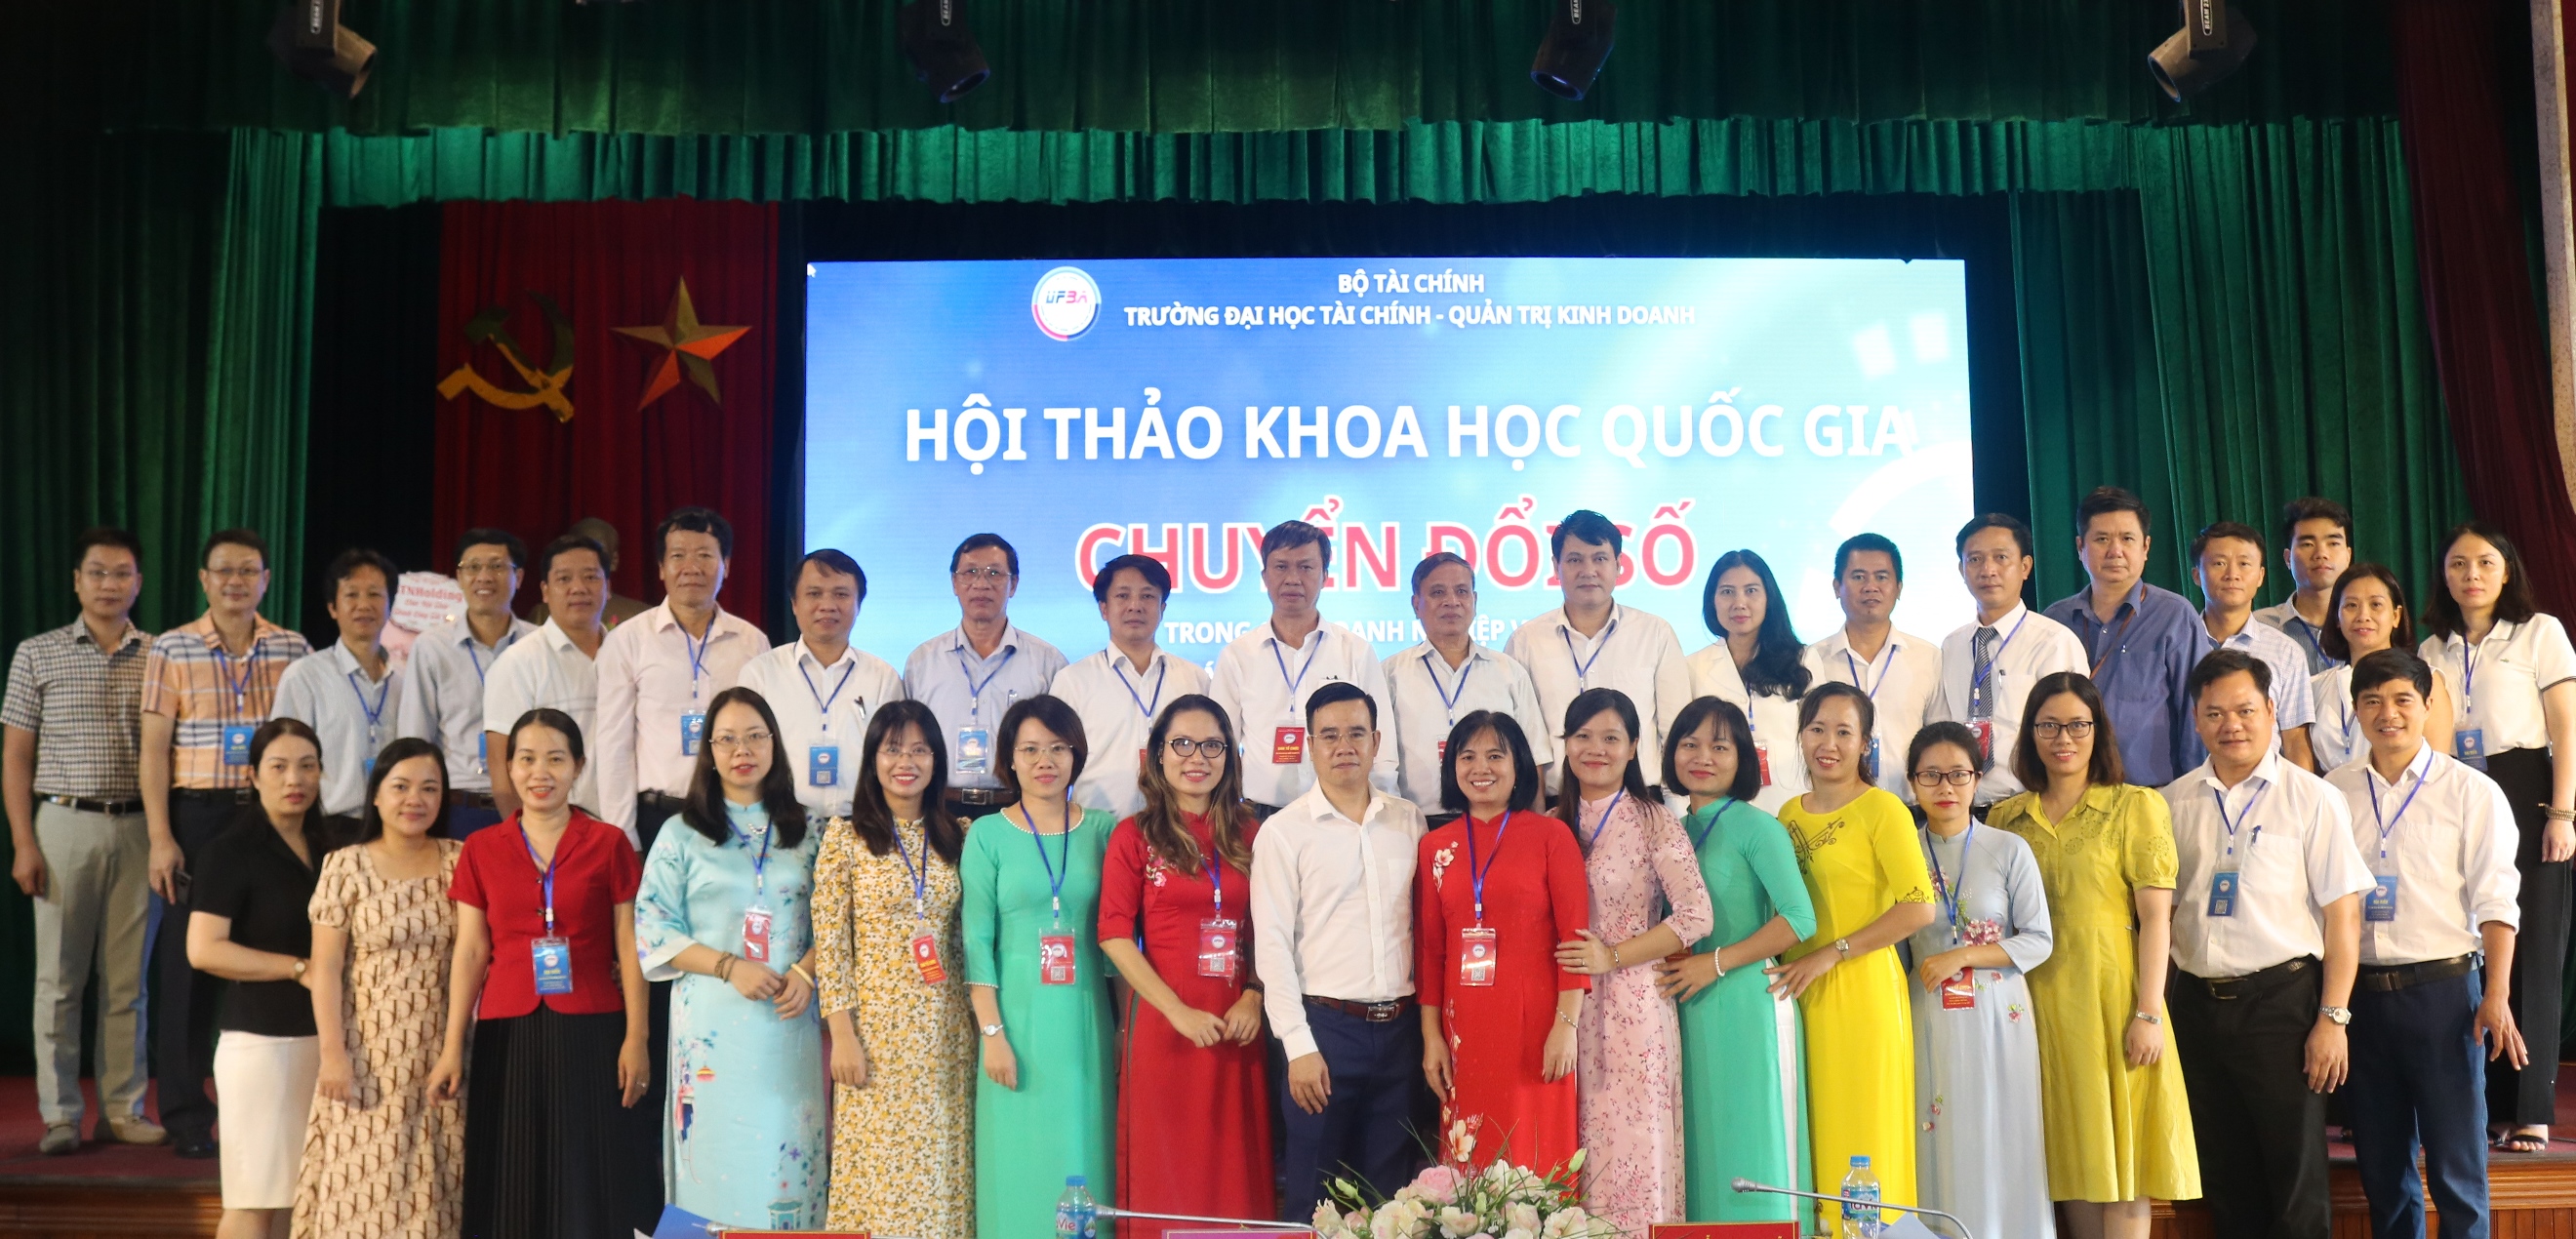 Hội thảo khoa học Quốc gia “Chuyển đổi số trong trong các doanh nghiệp Việt Nam: Các vấn đề lý luận và thực tiễn”.